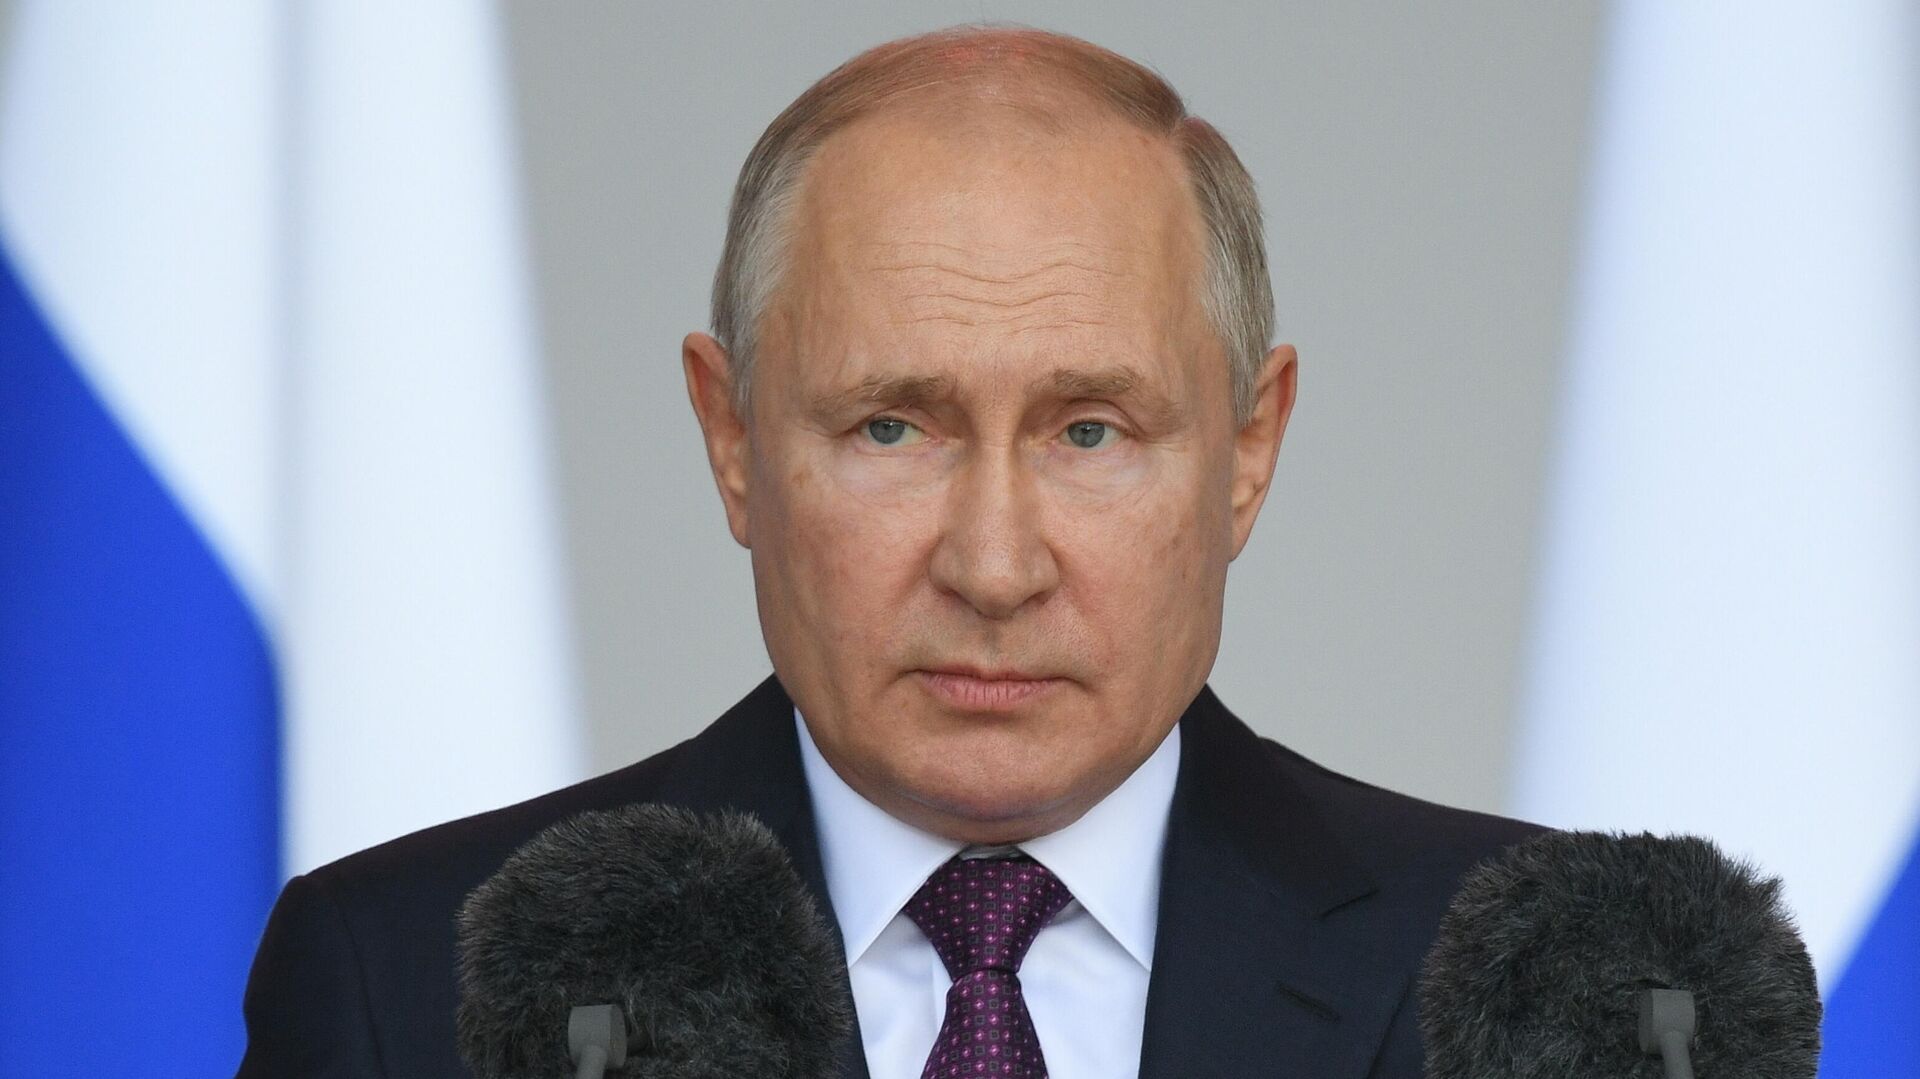 Путин поручил доложить о финансировании объектов развития в Беслане